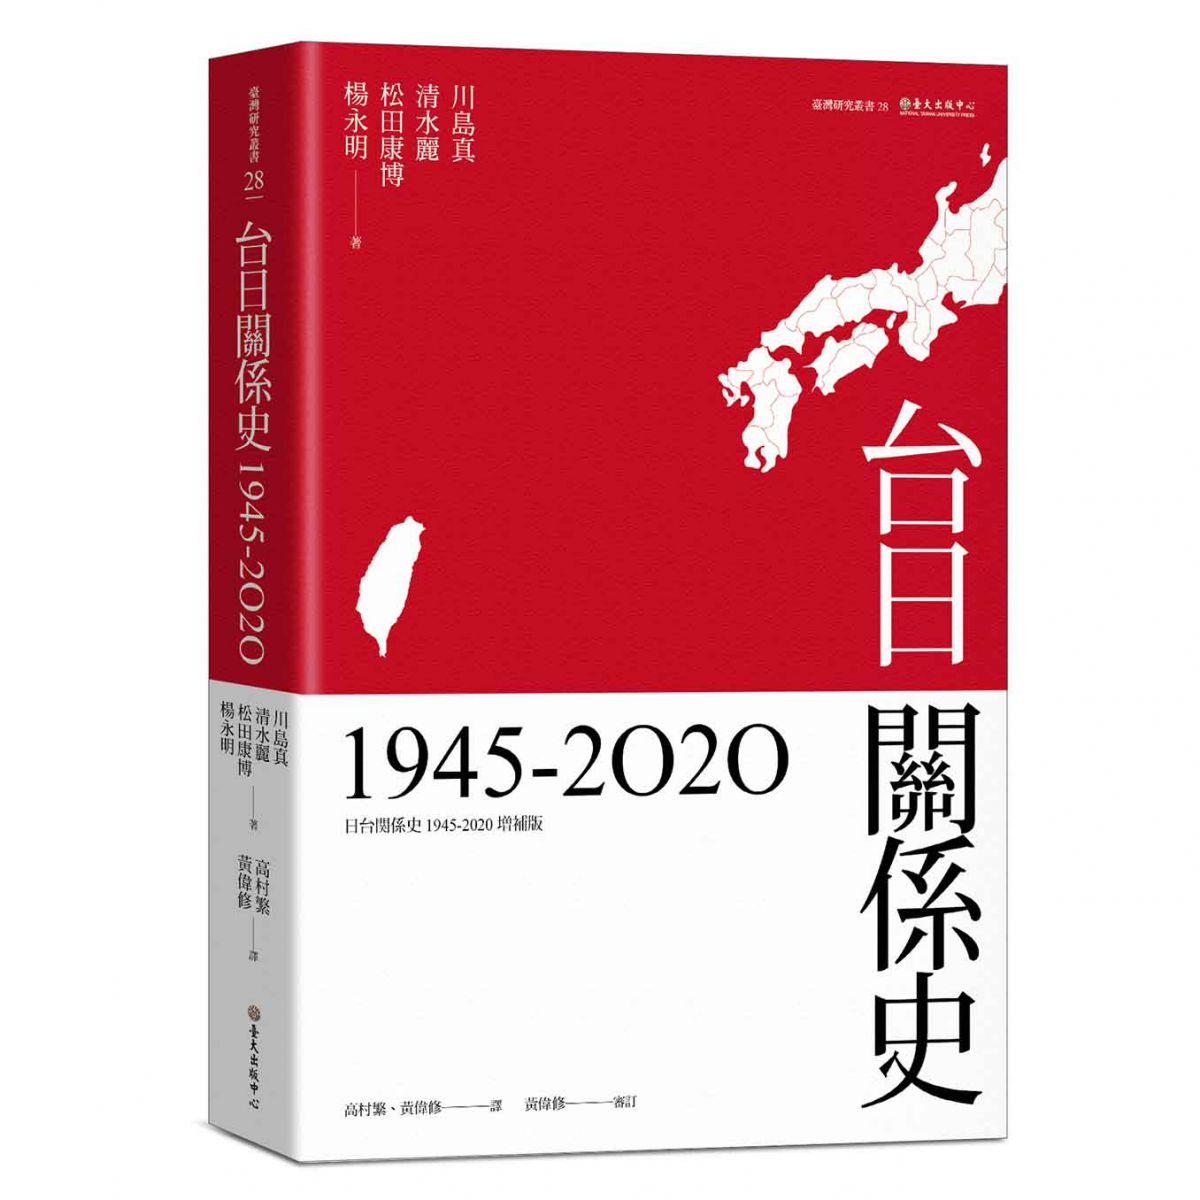 《台日關係史（1945-2020）》綜合性地闡明台日政治關係，是學界第一本以此為分析對象的專書